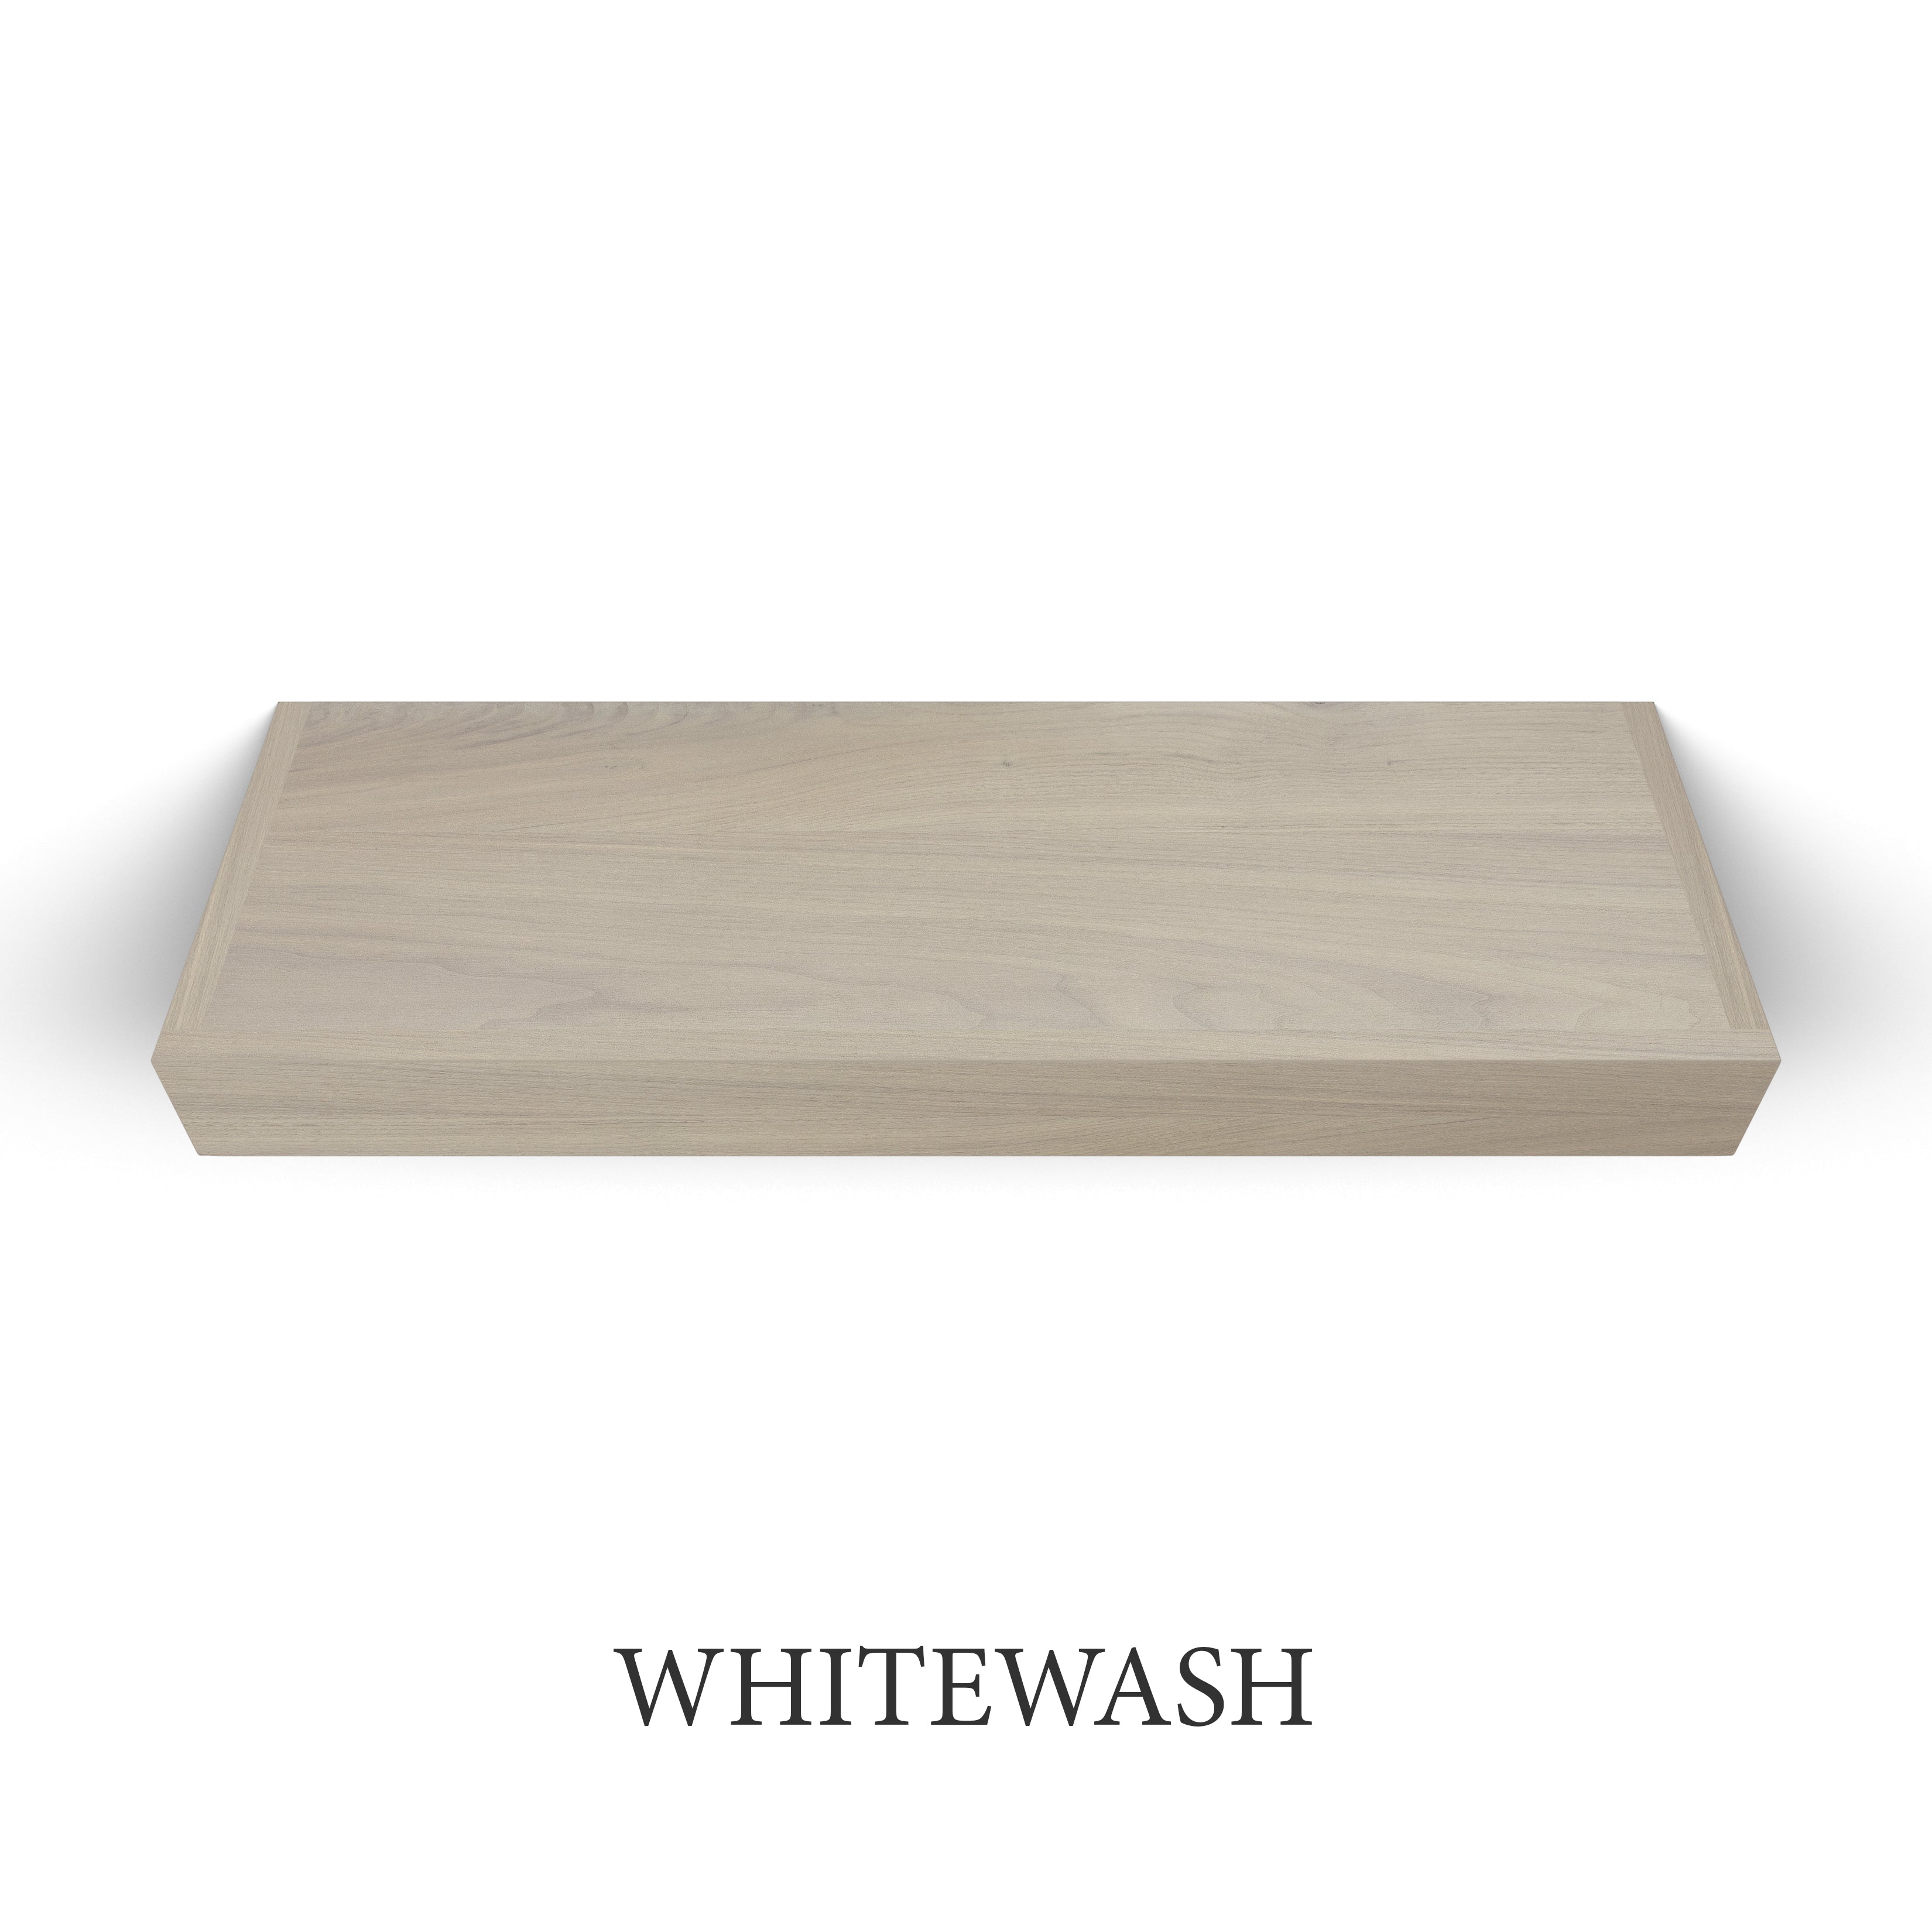 whitewash Walnut 3 Inch Thick LED Lighted Floating Shelf - Hardwired